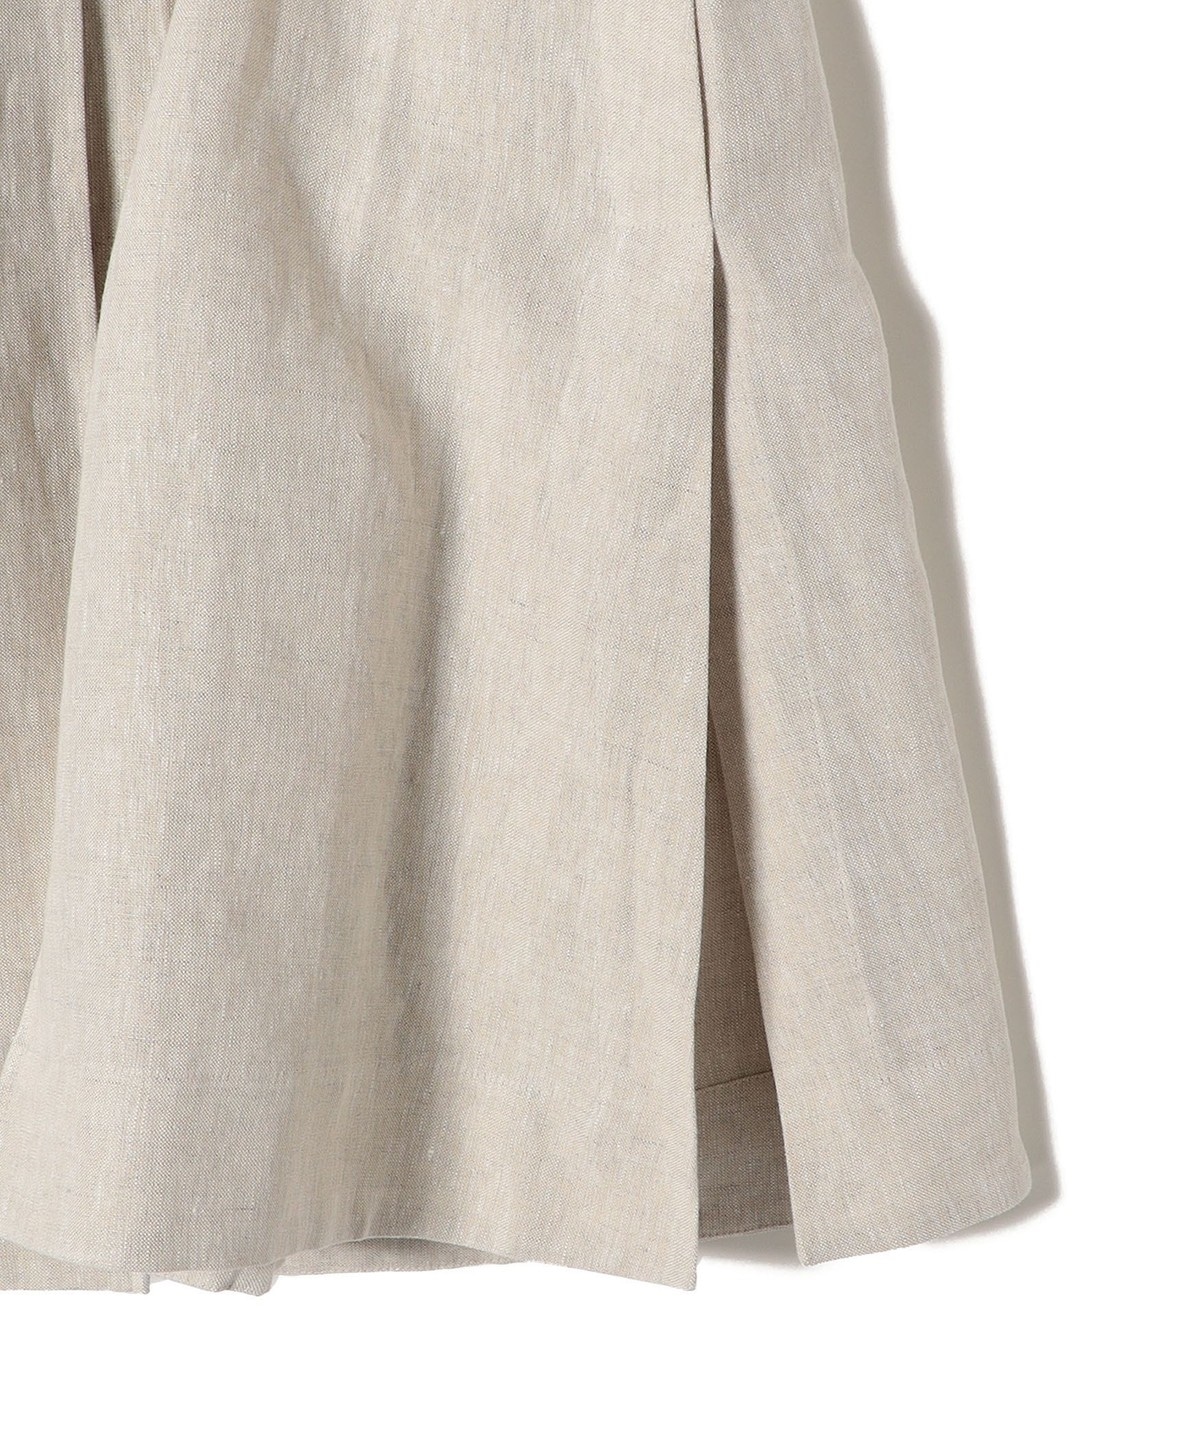 NEHERA:〈洗濯機可能〉ソナムクラシックタックスカート: スカート